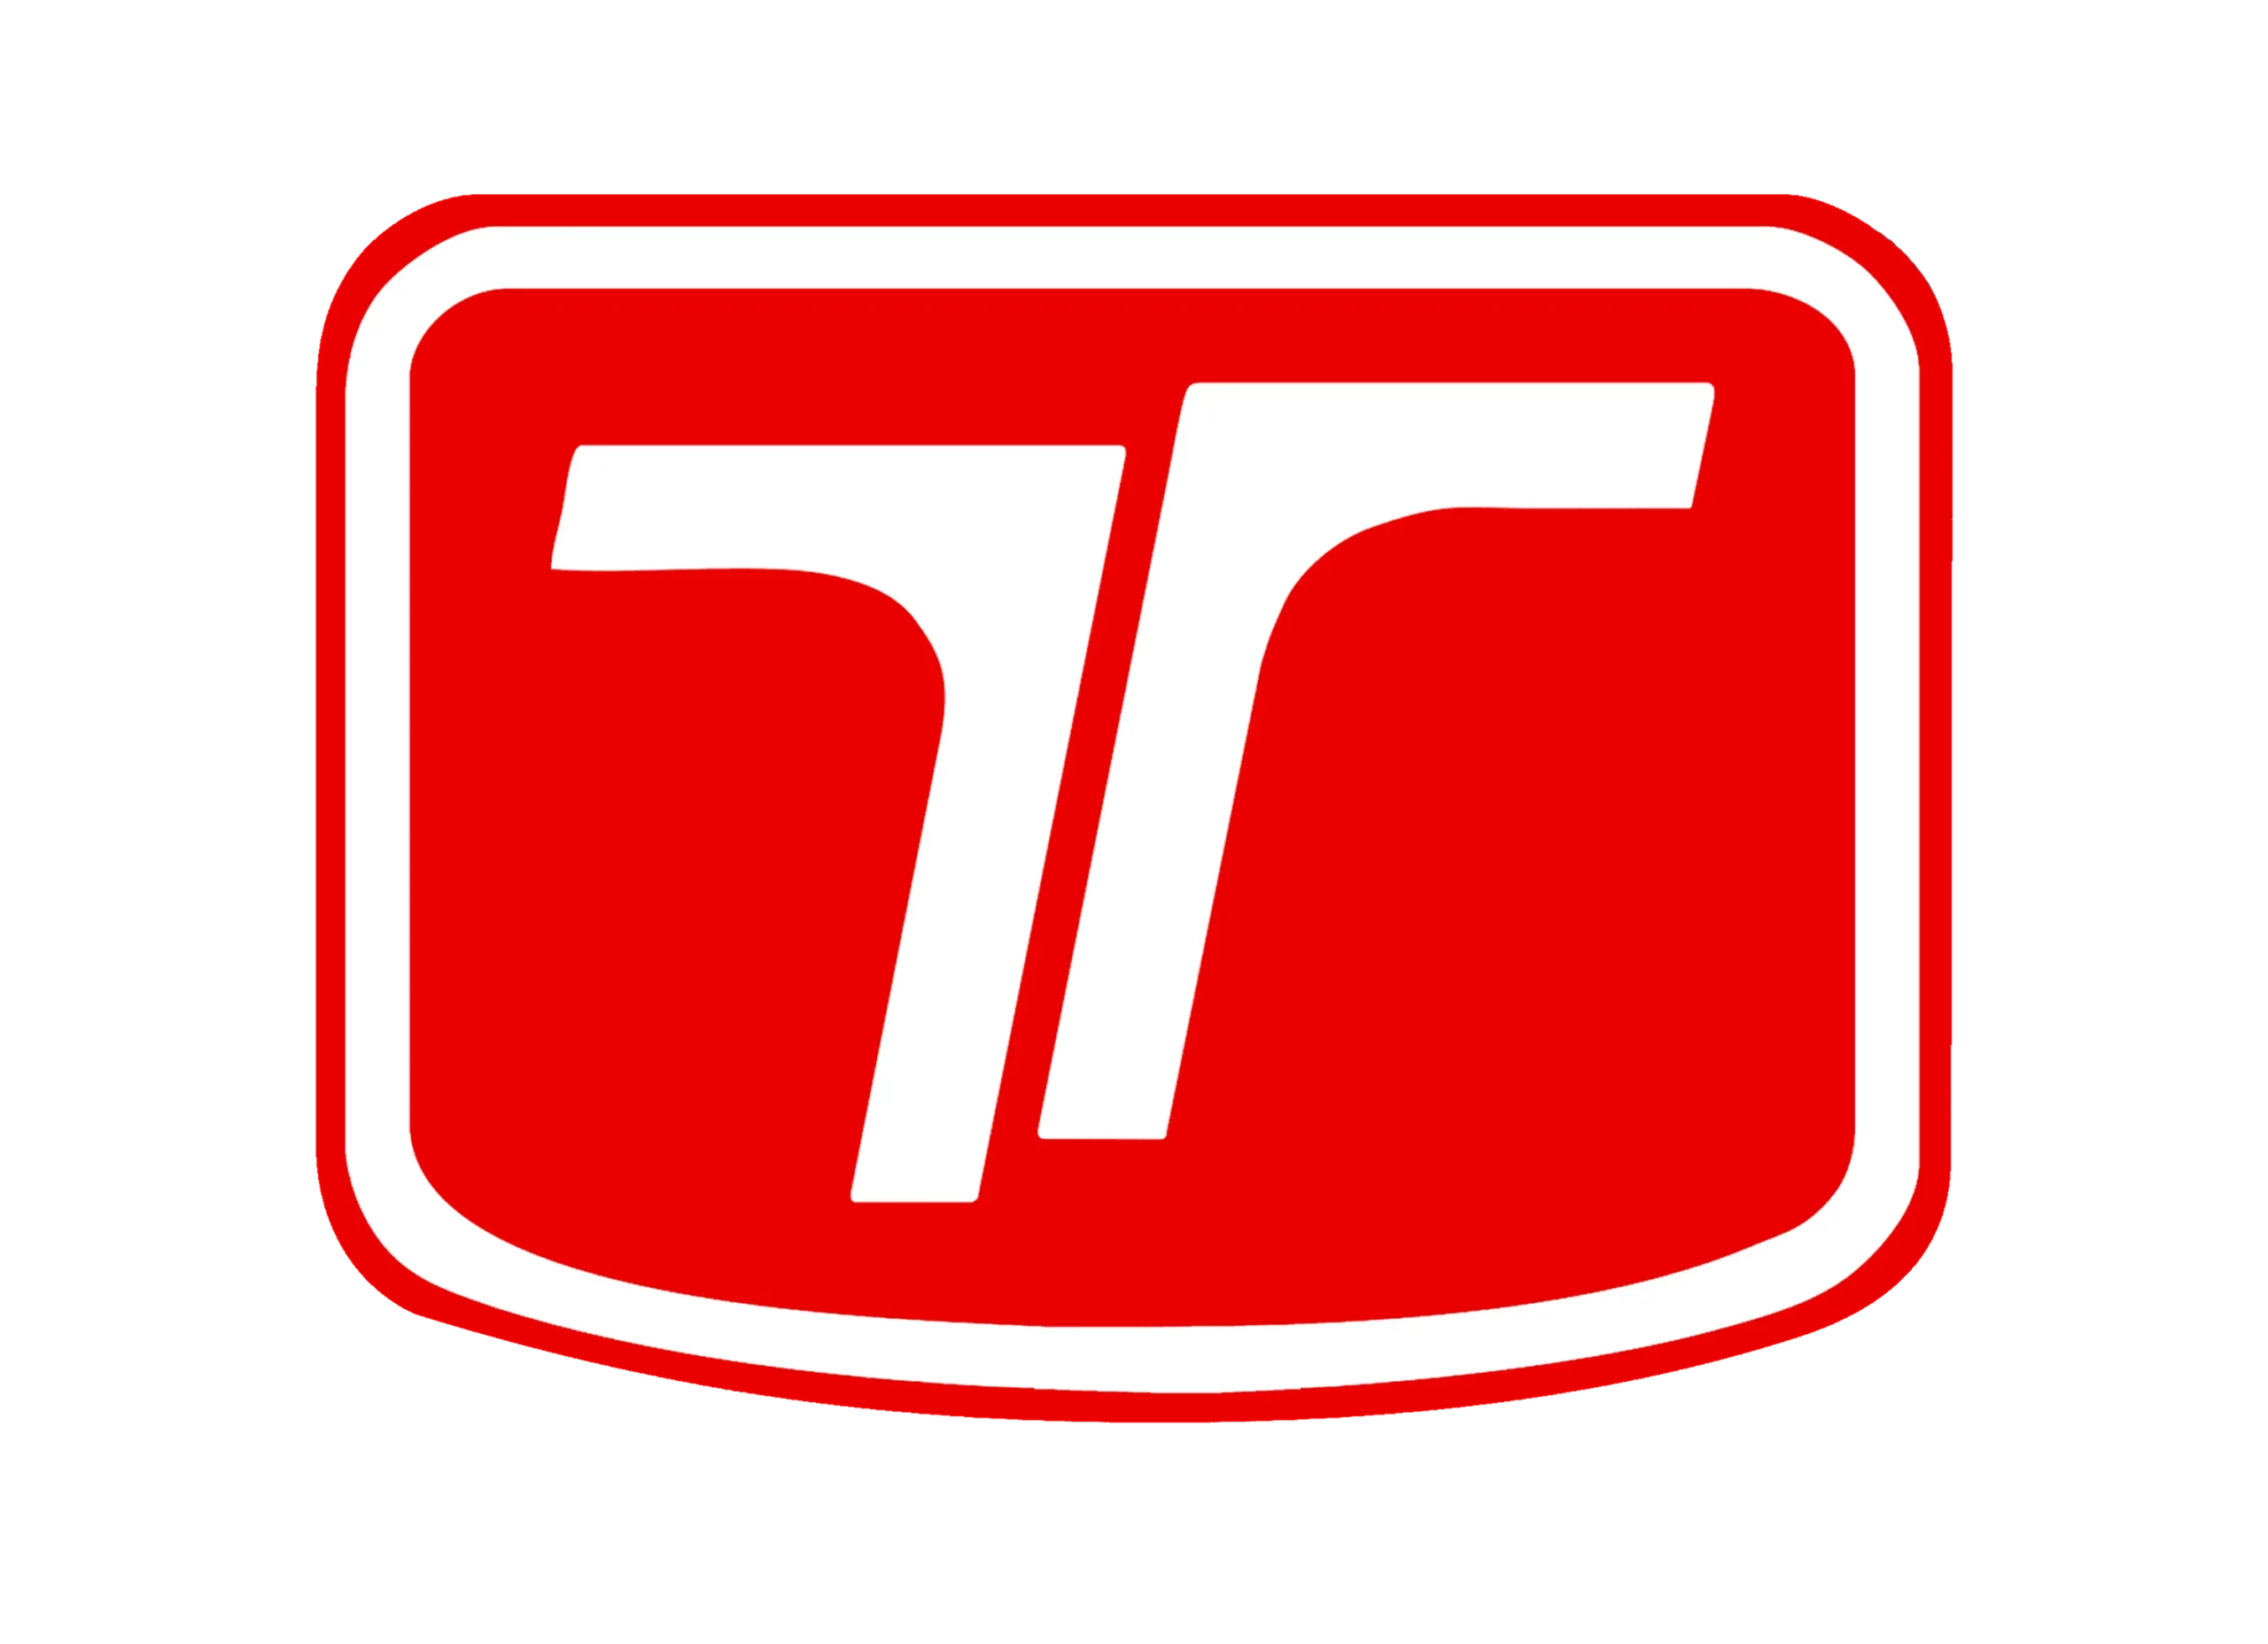 Troller logo